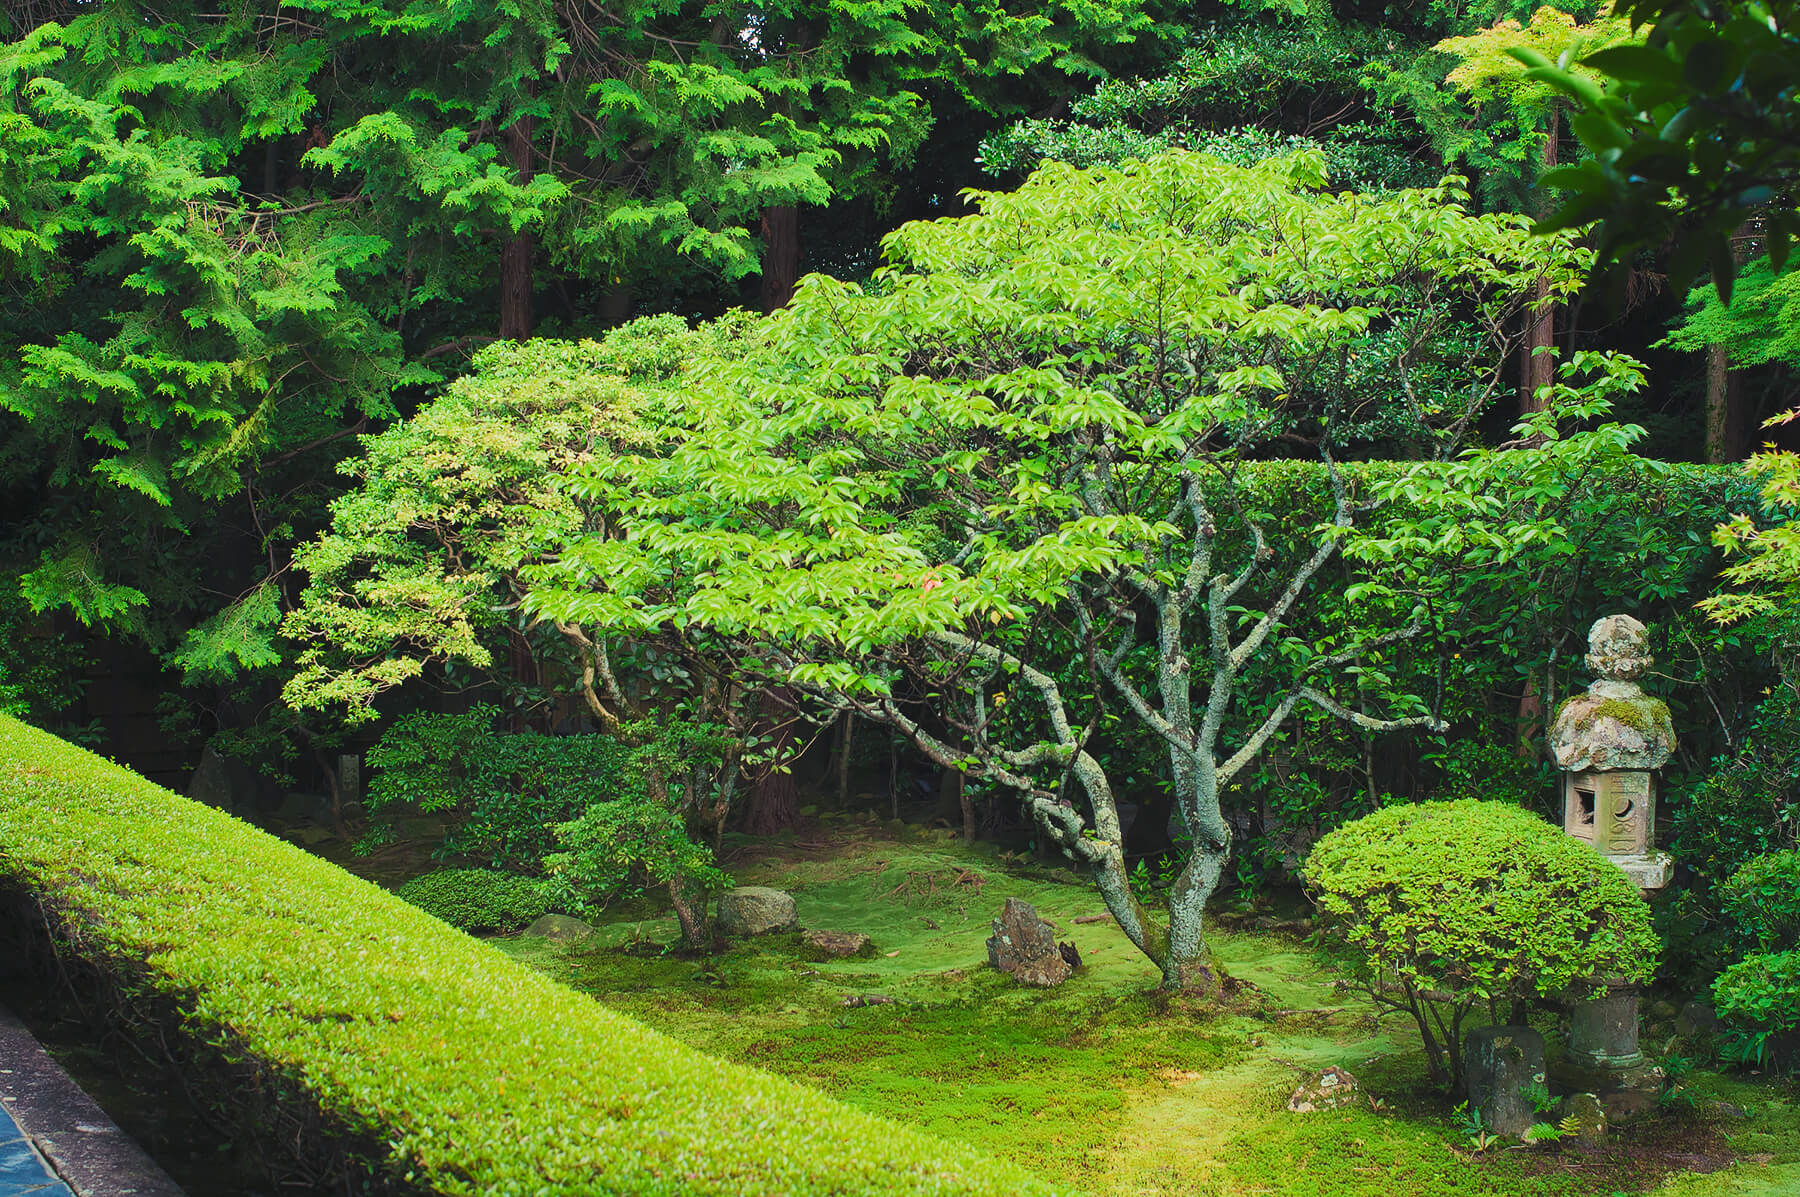 
          京都「妙心寺桂春院」の庭園写真1
      